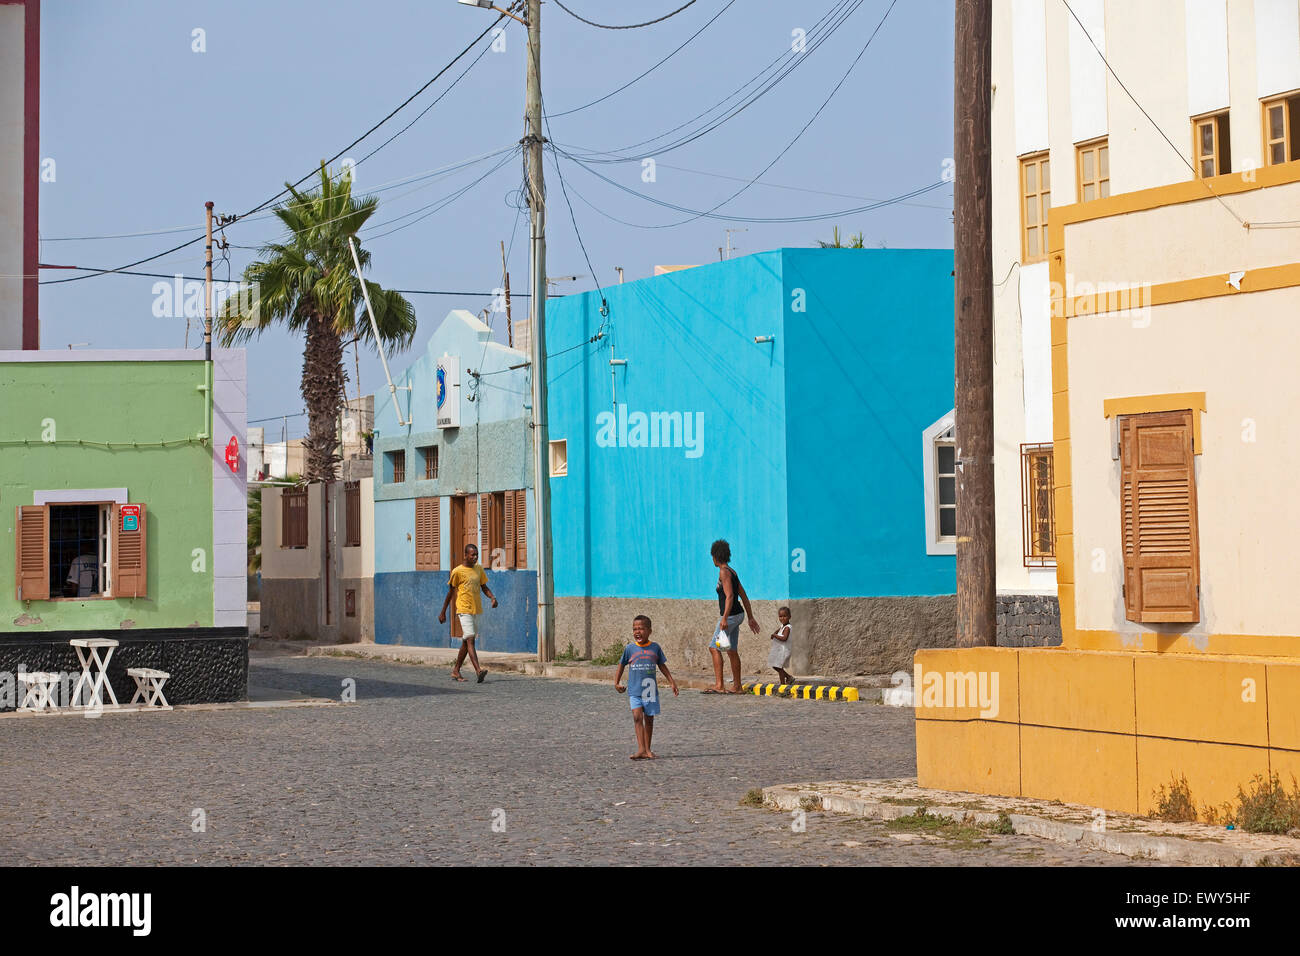 Rue avec ses maisons colorées au village de pêcheurs Palmeira sur l'île de Sal, Cap Vert / Cabo Verde, l'Afrique de l'Ouest Banque D'Images